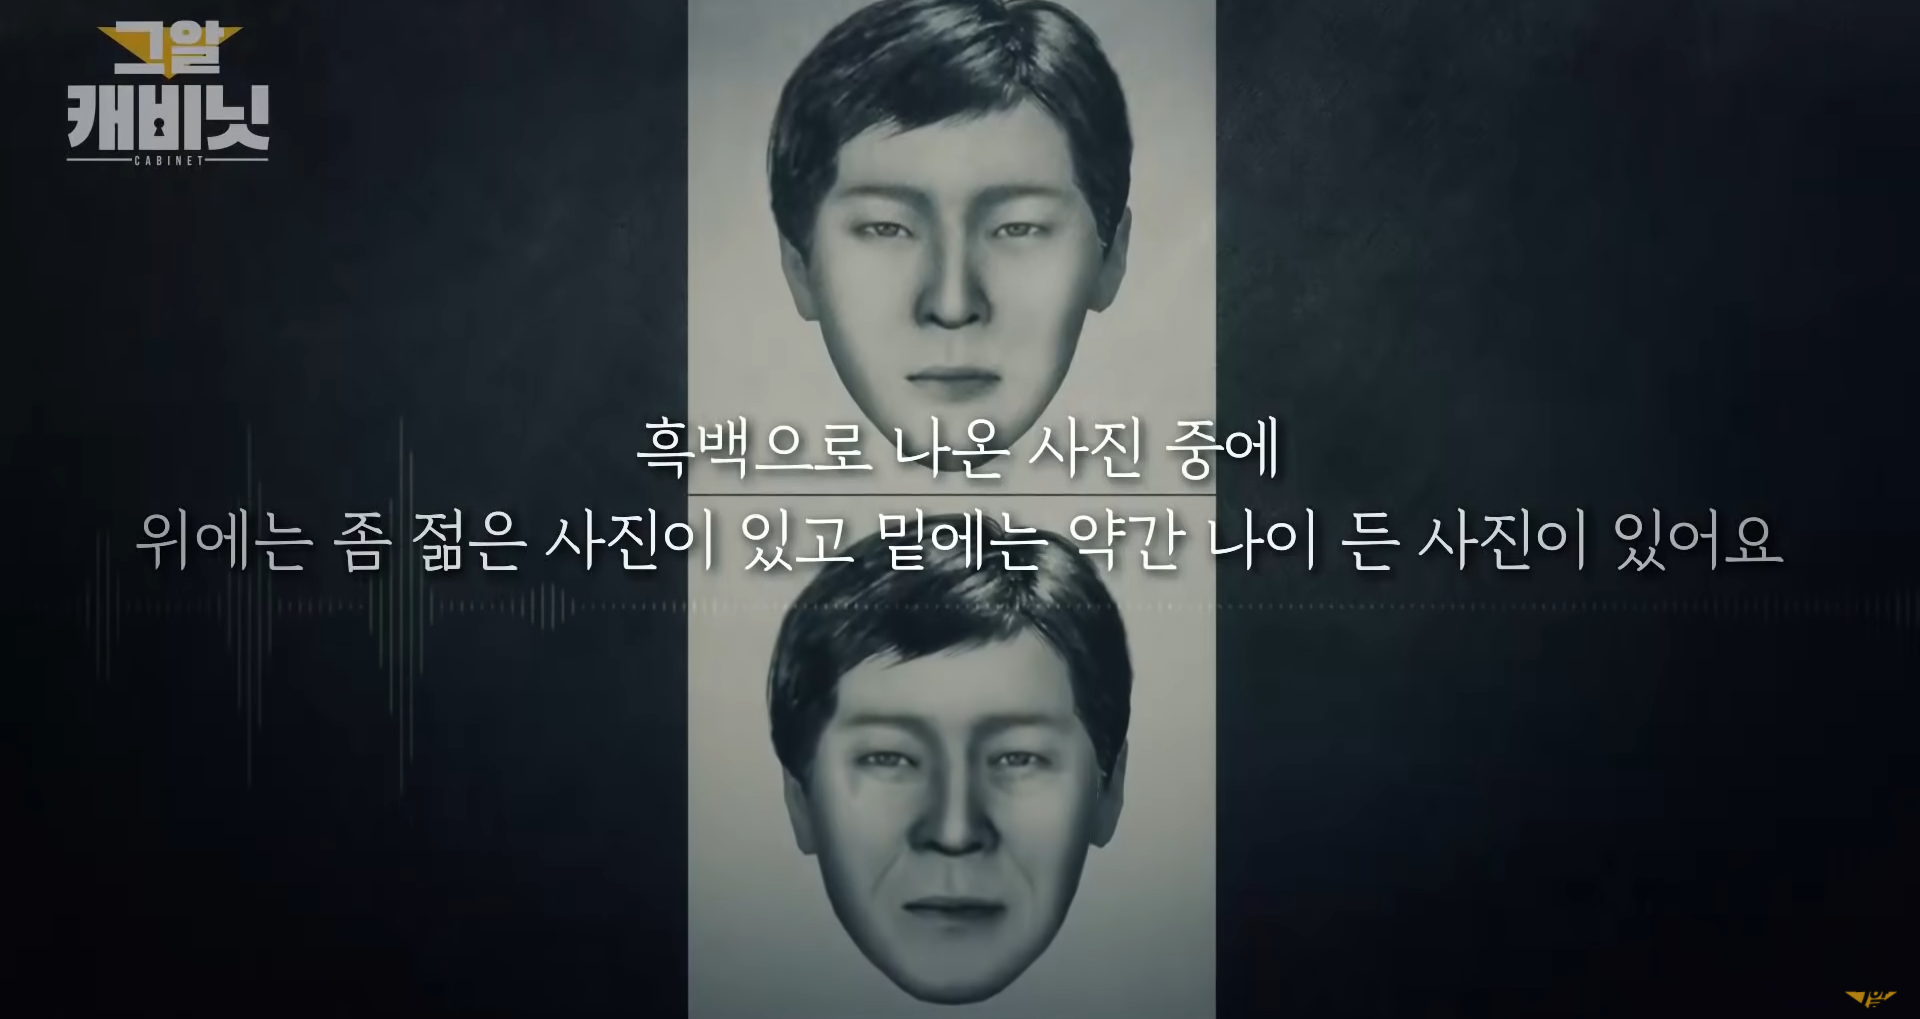 unsolved crimes in korea - murderer sketch